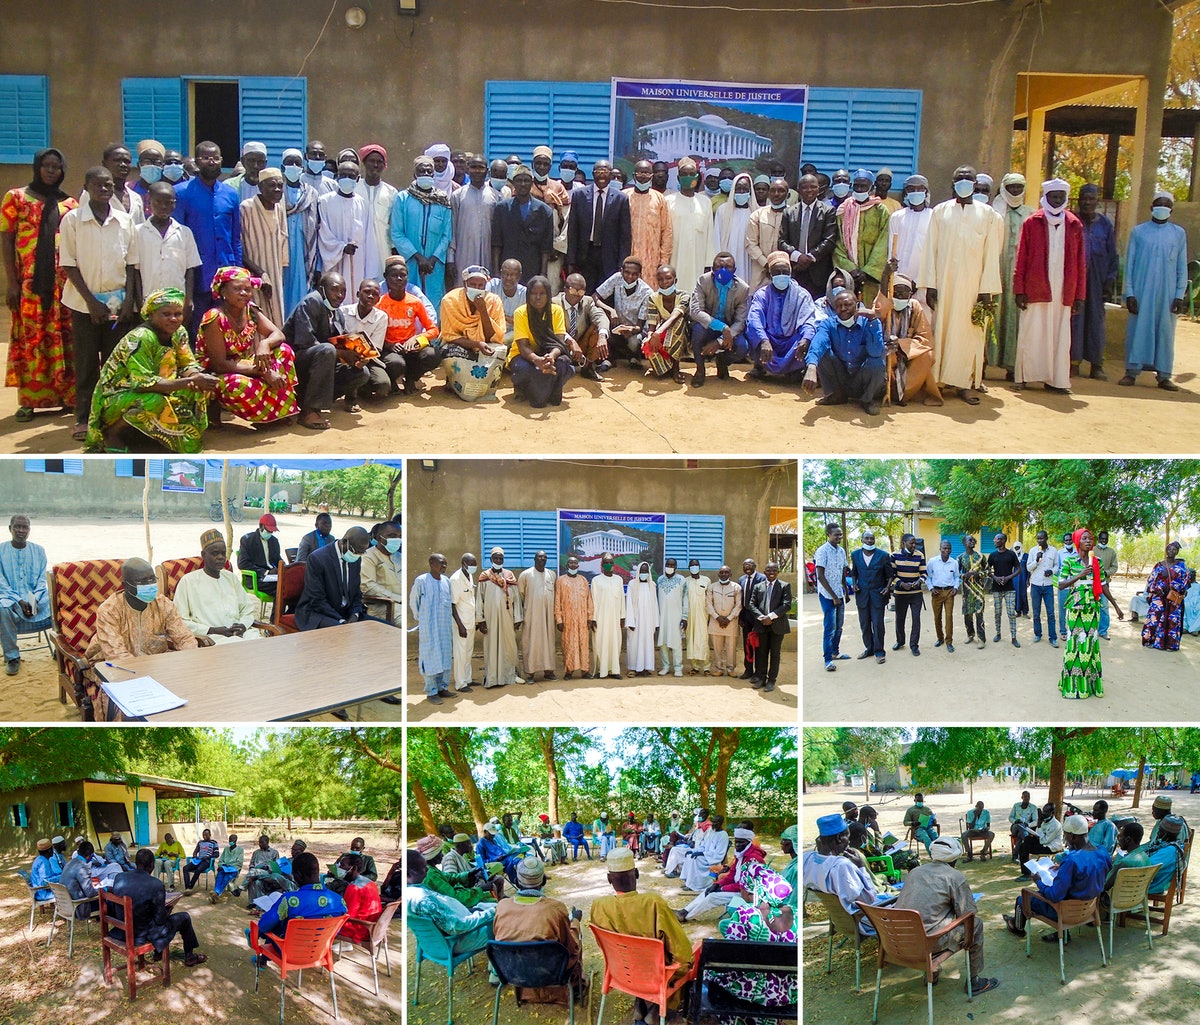 Une conférence locale dans la région du sud-ouest du Tchad, qui s’est tenue dans la sous-préfecture de Moulkou, a réuni plus de 120 participants, dont des responsables gouvernementaux, des chefs et des leaders religieux.